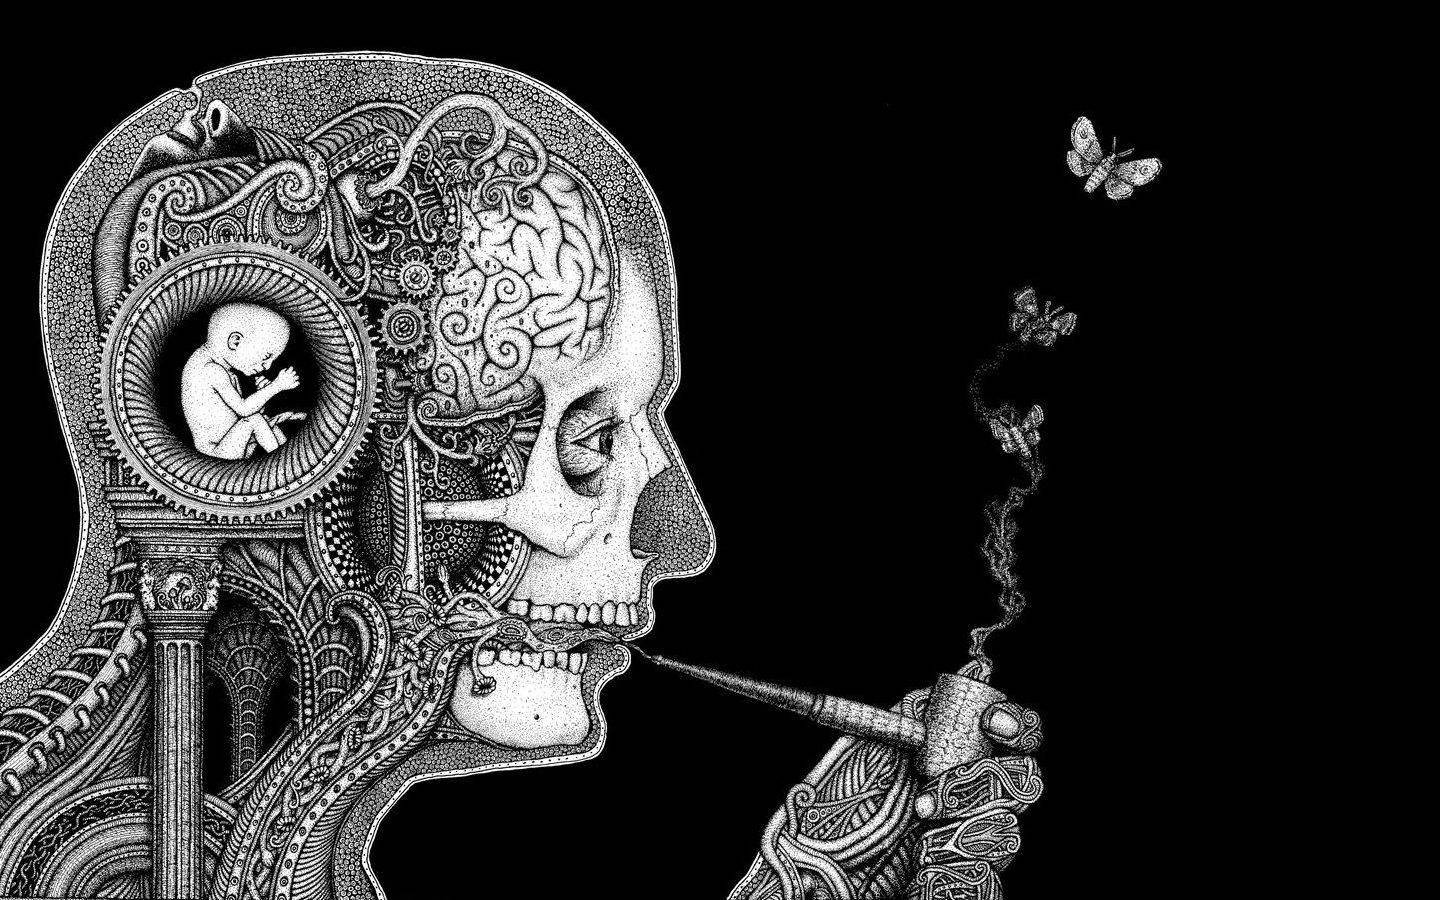 Einmann Raucht Eine Zigarette In Einer Schwarz-weiß Zeichnung. Wallpaper